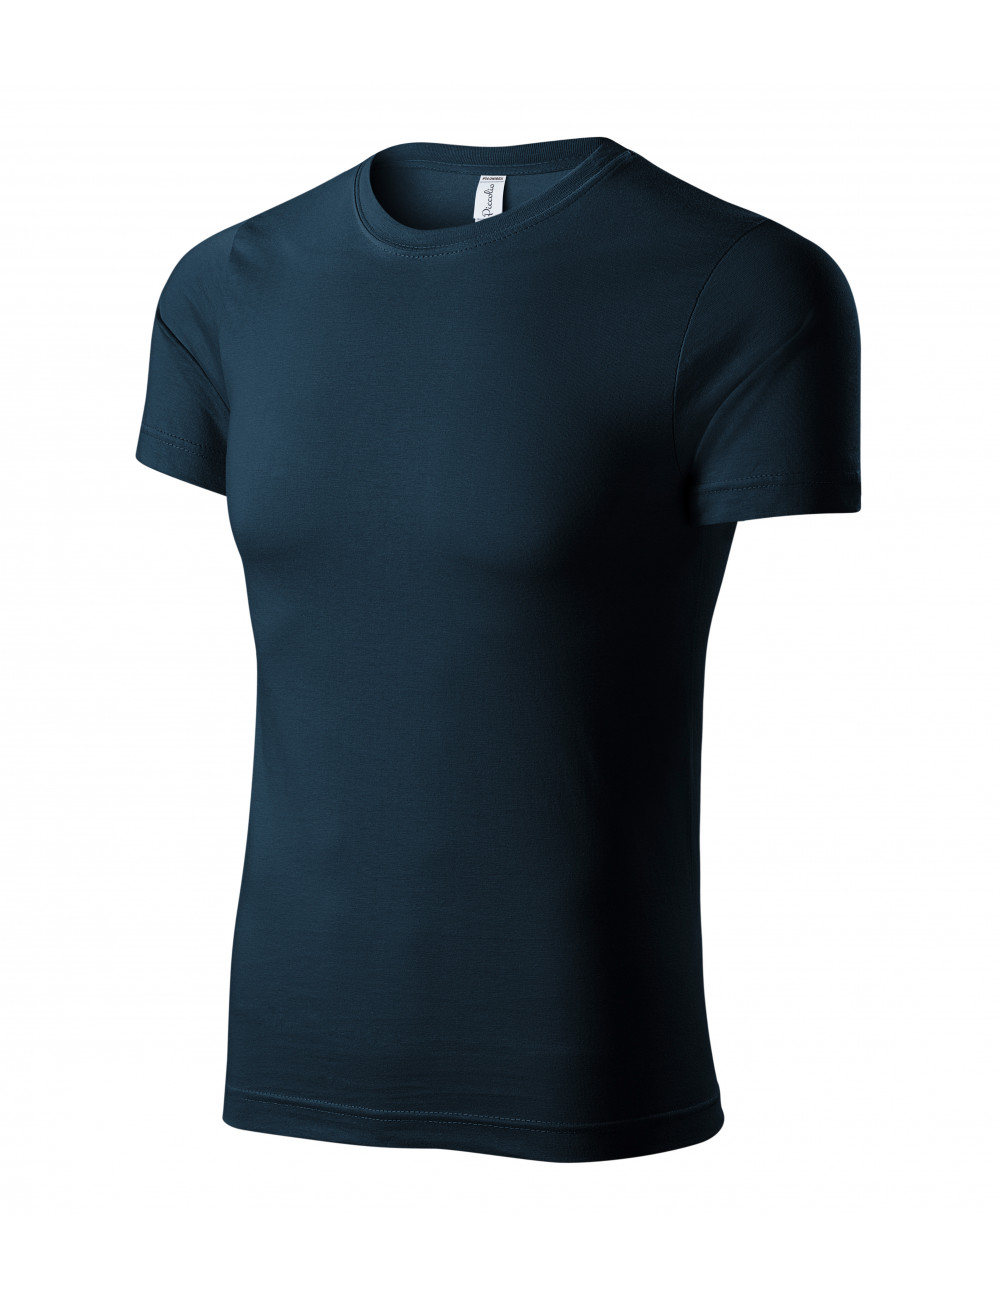 Unisex T-Shirt Peak P74 Marineblau Adler Piccolio